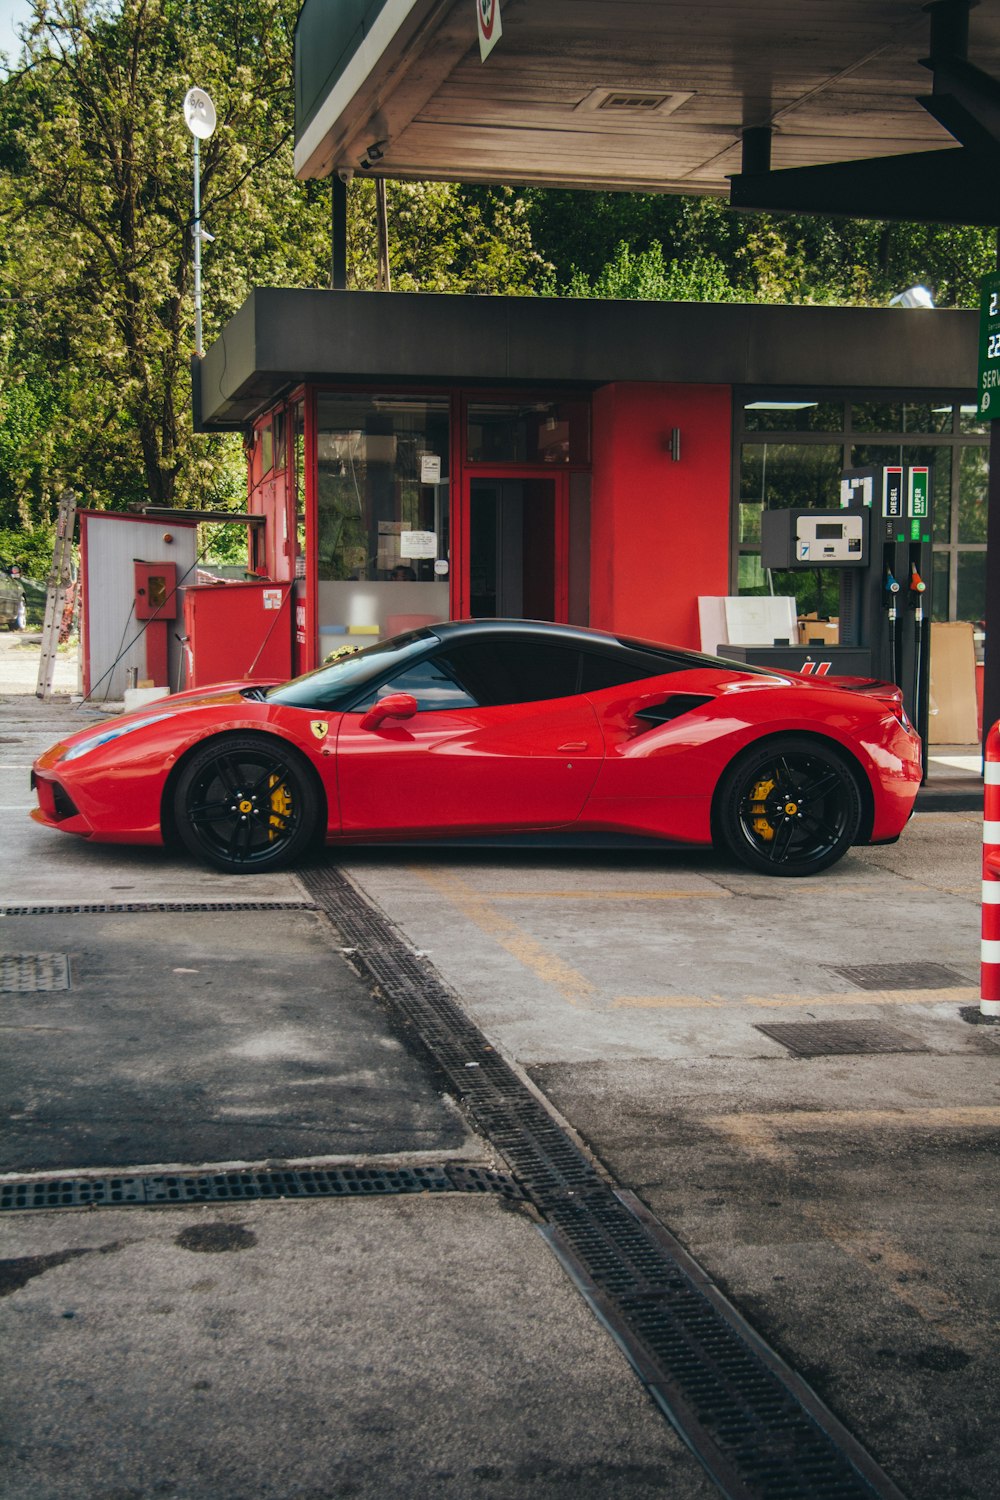 ガソリンスタンドの前に停められた赤いスポーツカー